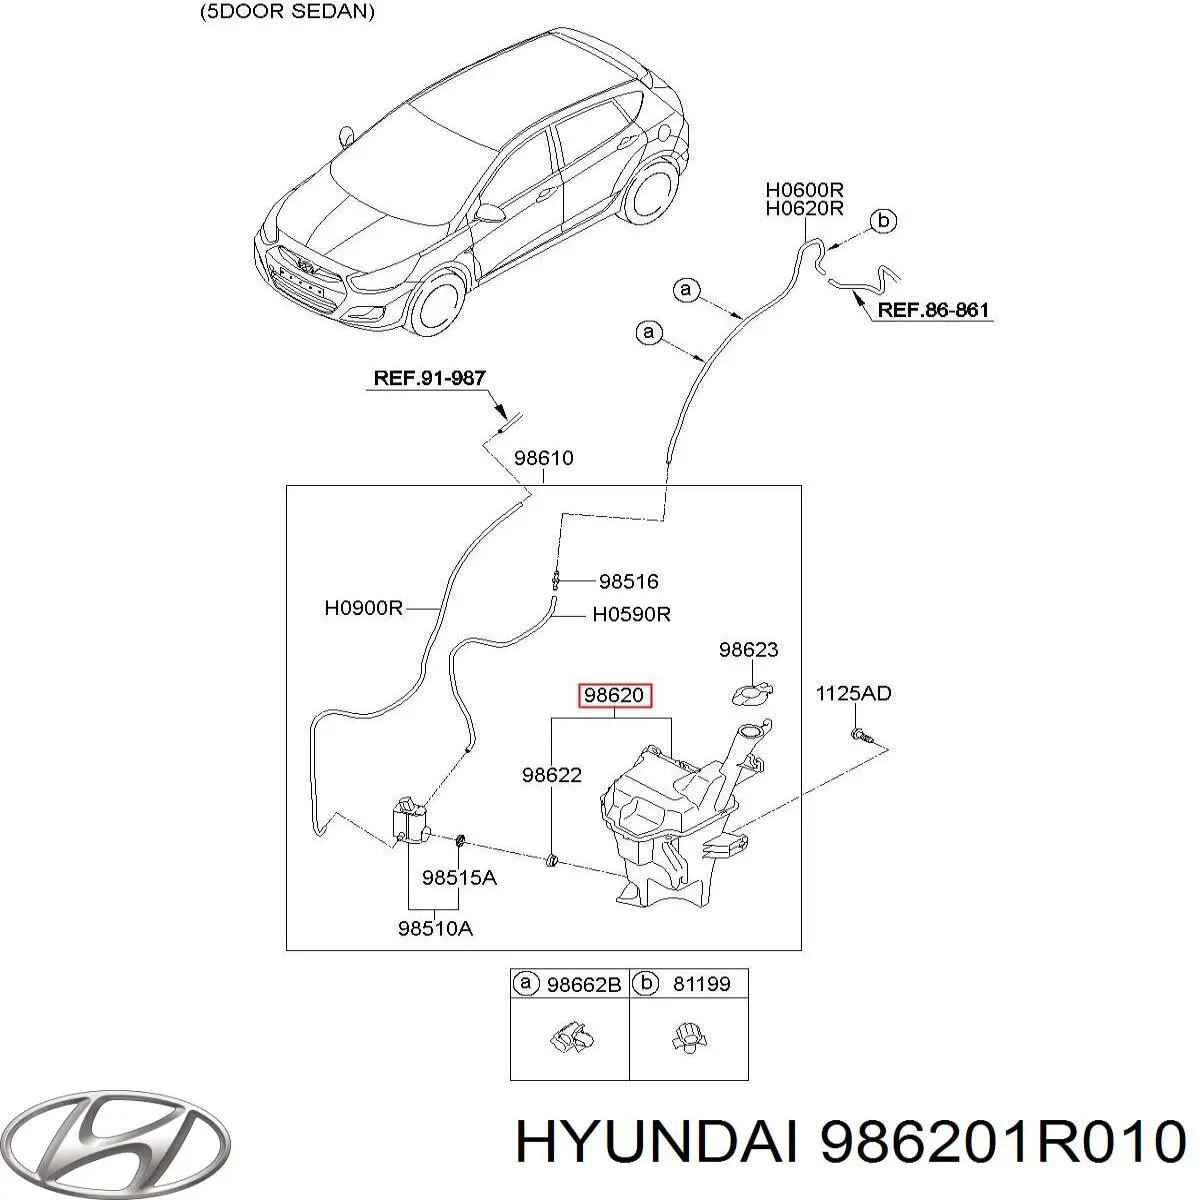 986201R010 Hyundai/Kia depósito de agua del limpiaparabrisas